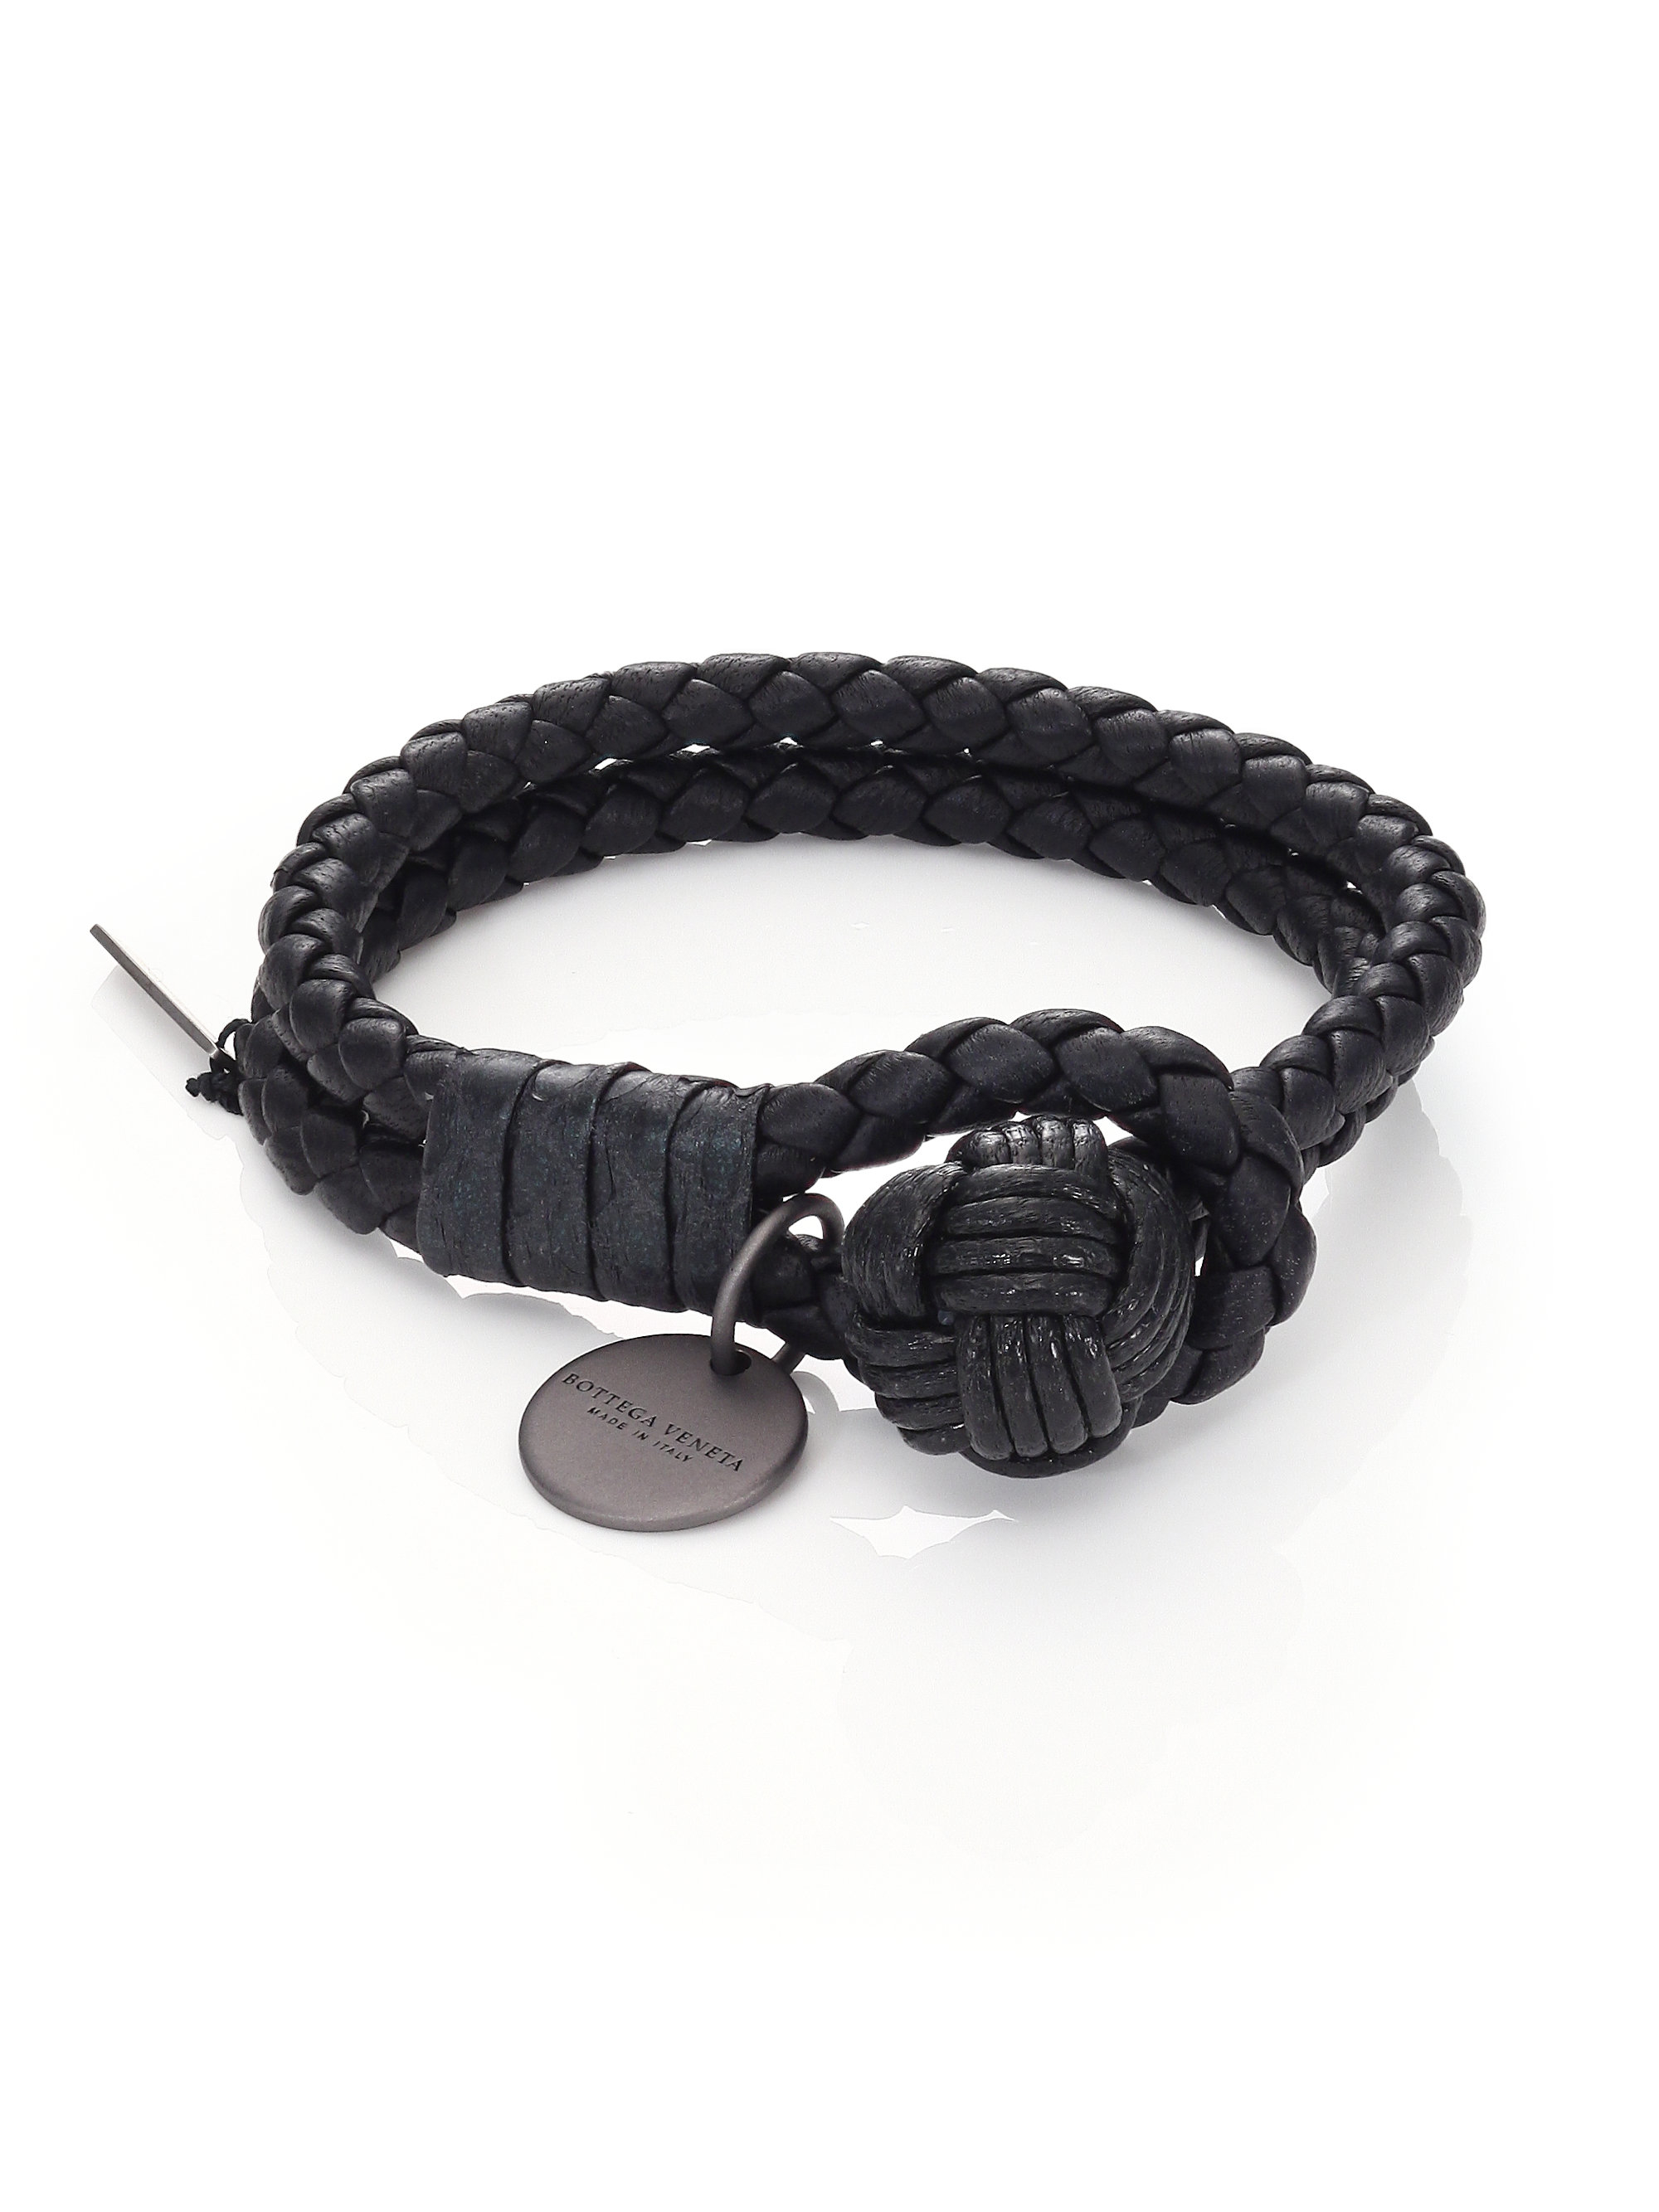 Bottega Veneta Intrecciato Snakeskin & Leather Double-row Wrap Bracelet